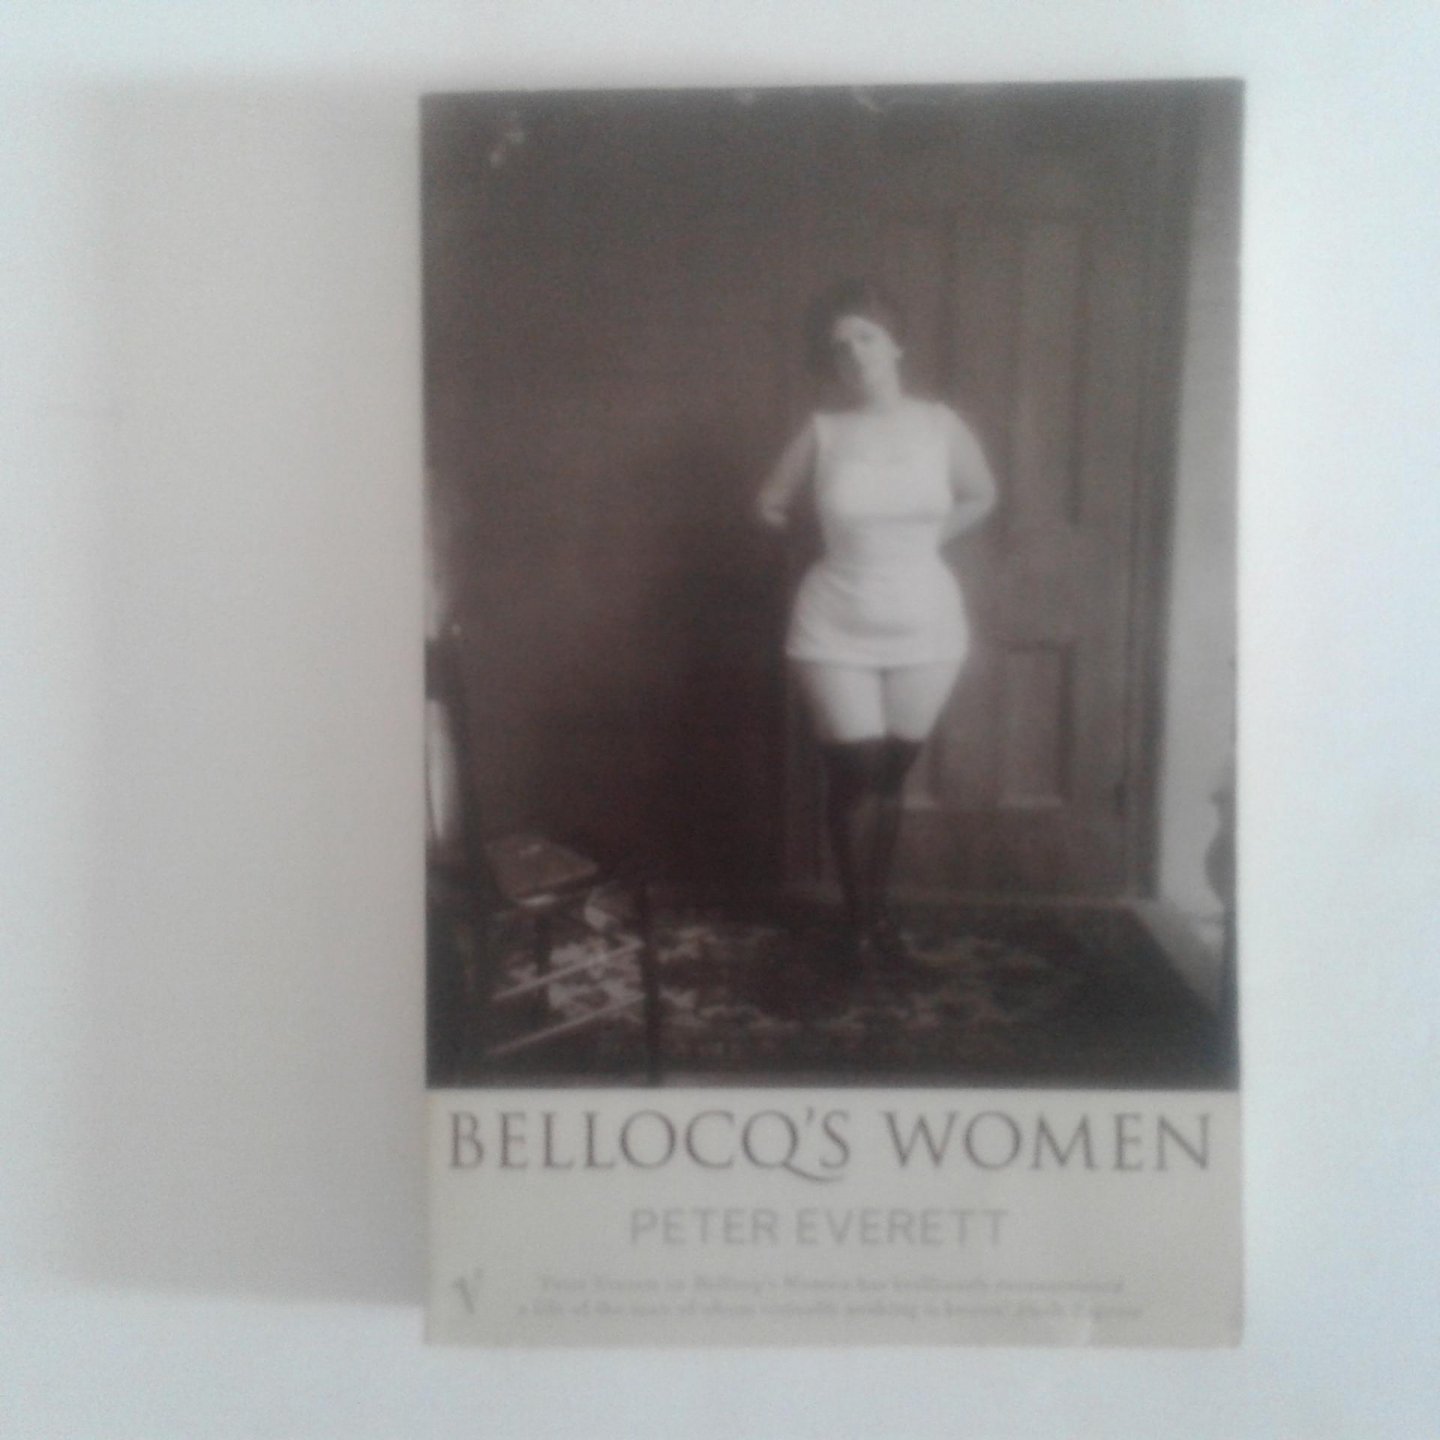 Everett, Peter - Bellocq's Women